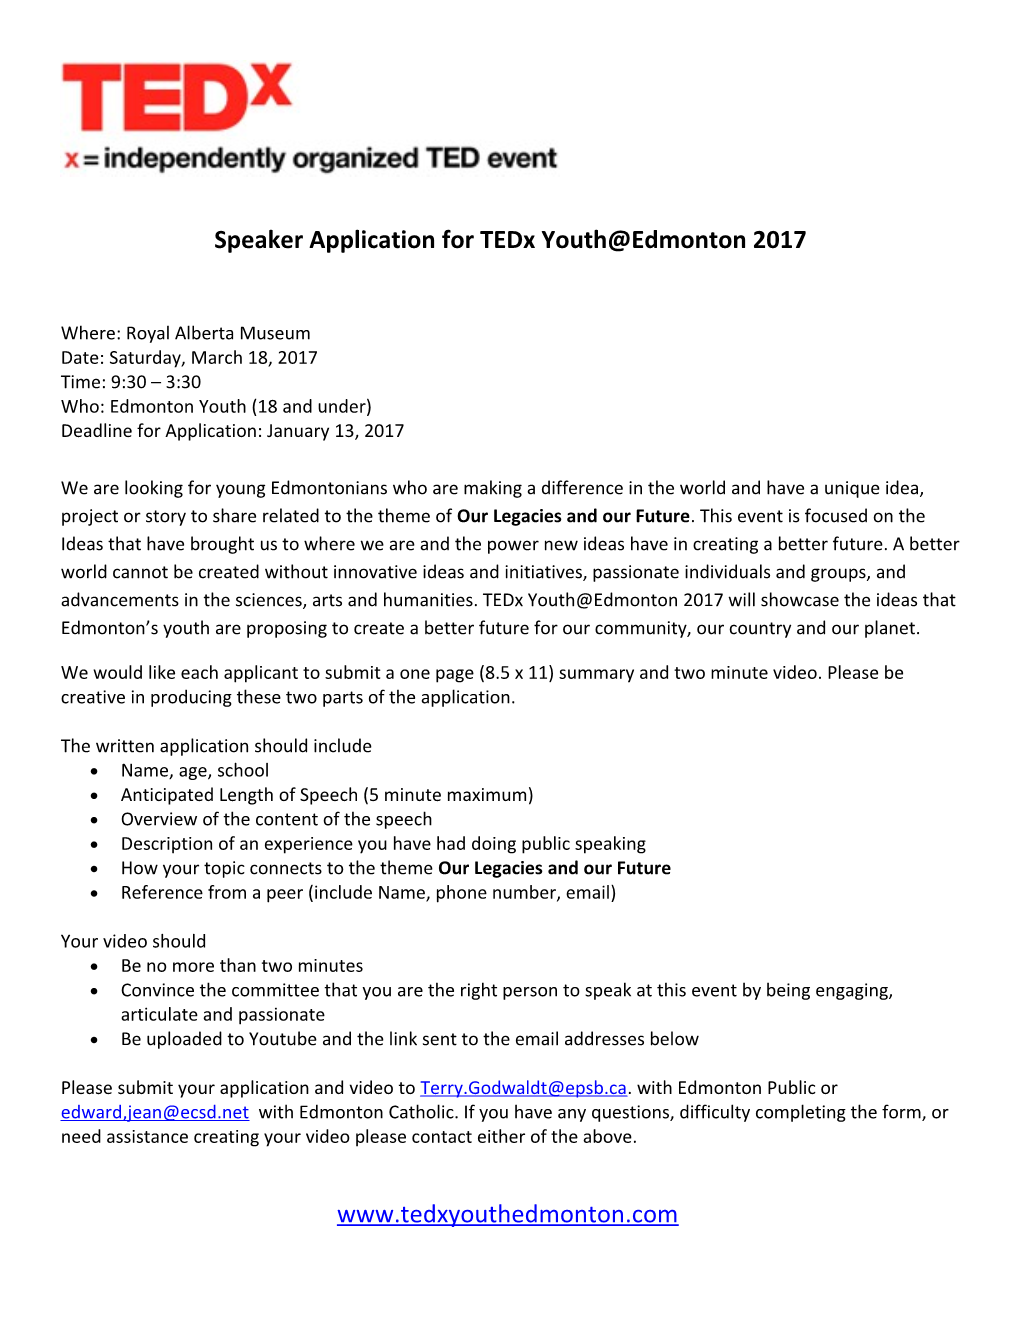 Speaker Application for Tedx Youth Edmonton 2017